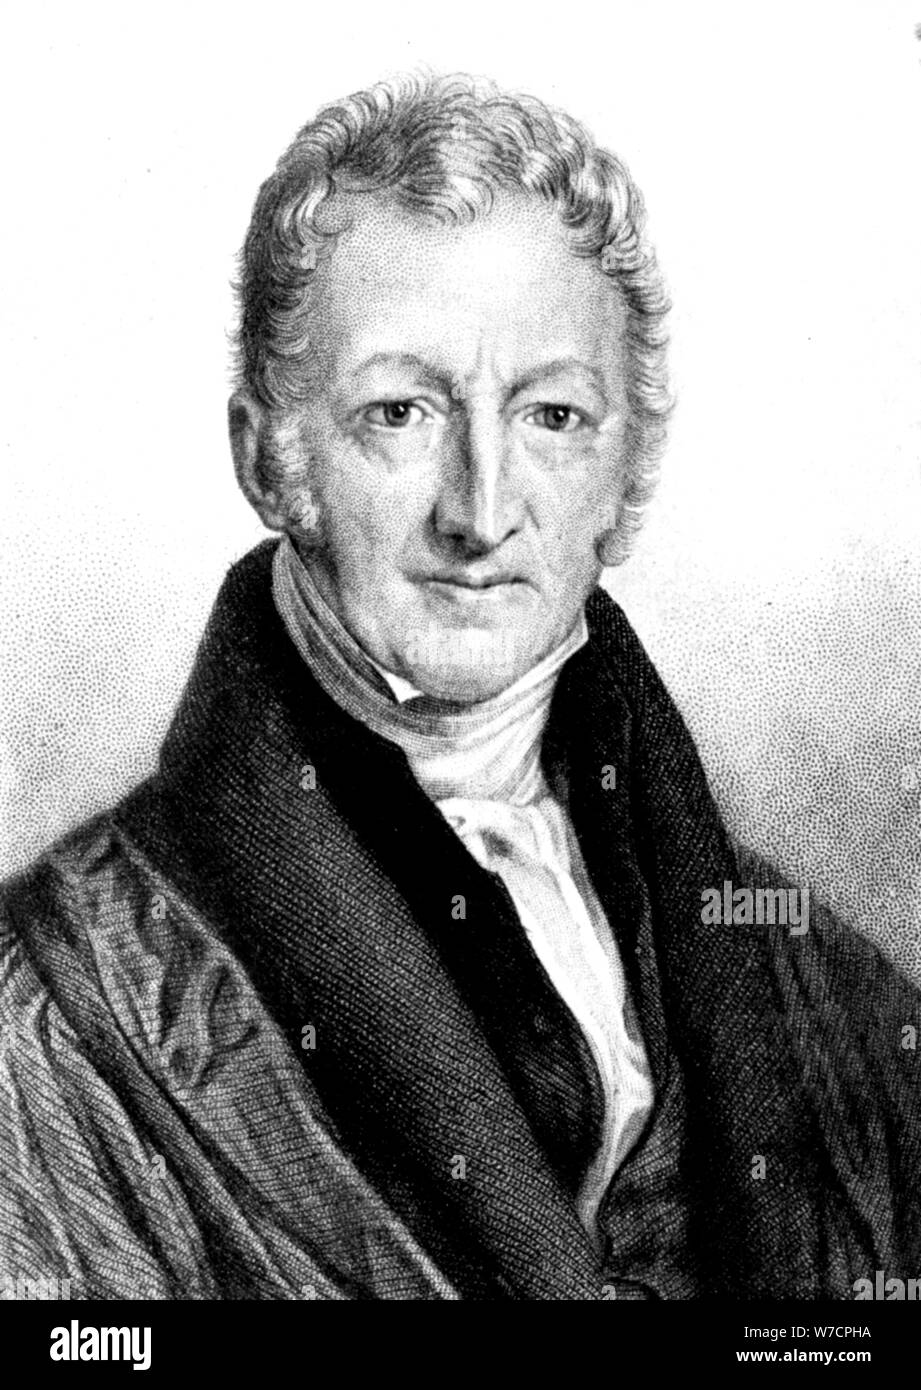 Thomas Robert Malthus, economista inglés y el clérigo. Artista: Desconocido Foto de stock